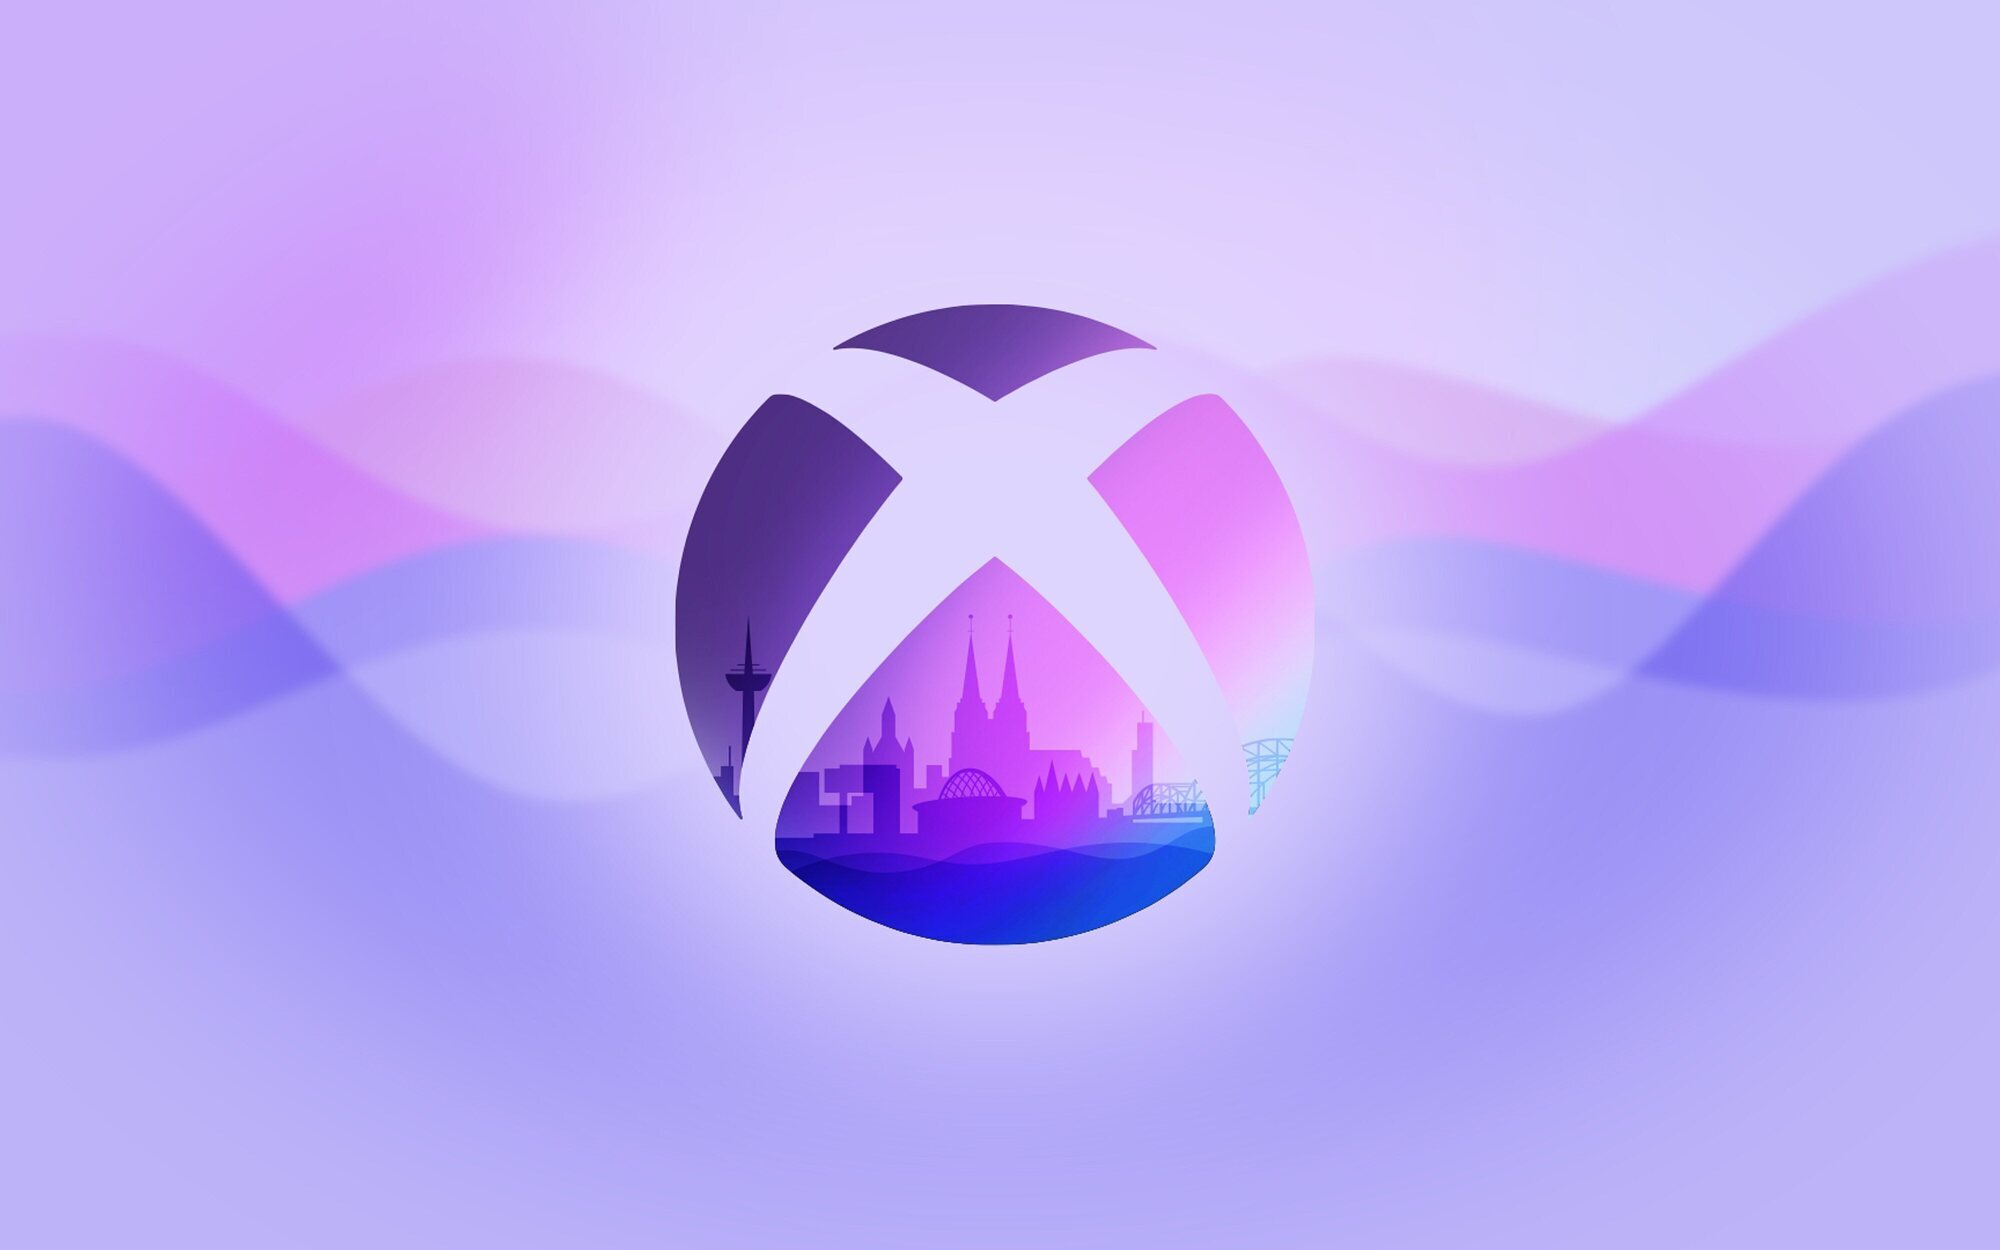 Gamescom 2022: Xbox promete novedades sobre los juegos que estrenarán en los próximos 12 meses